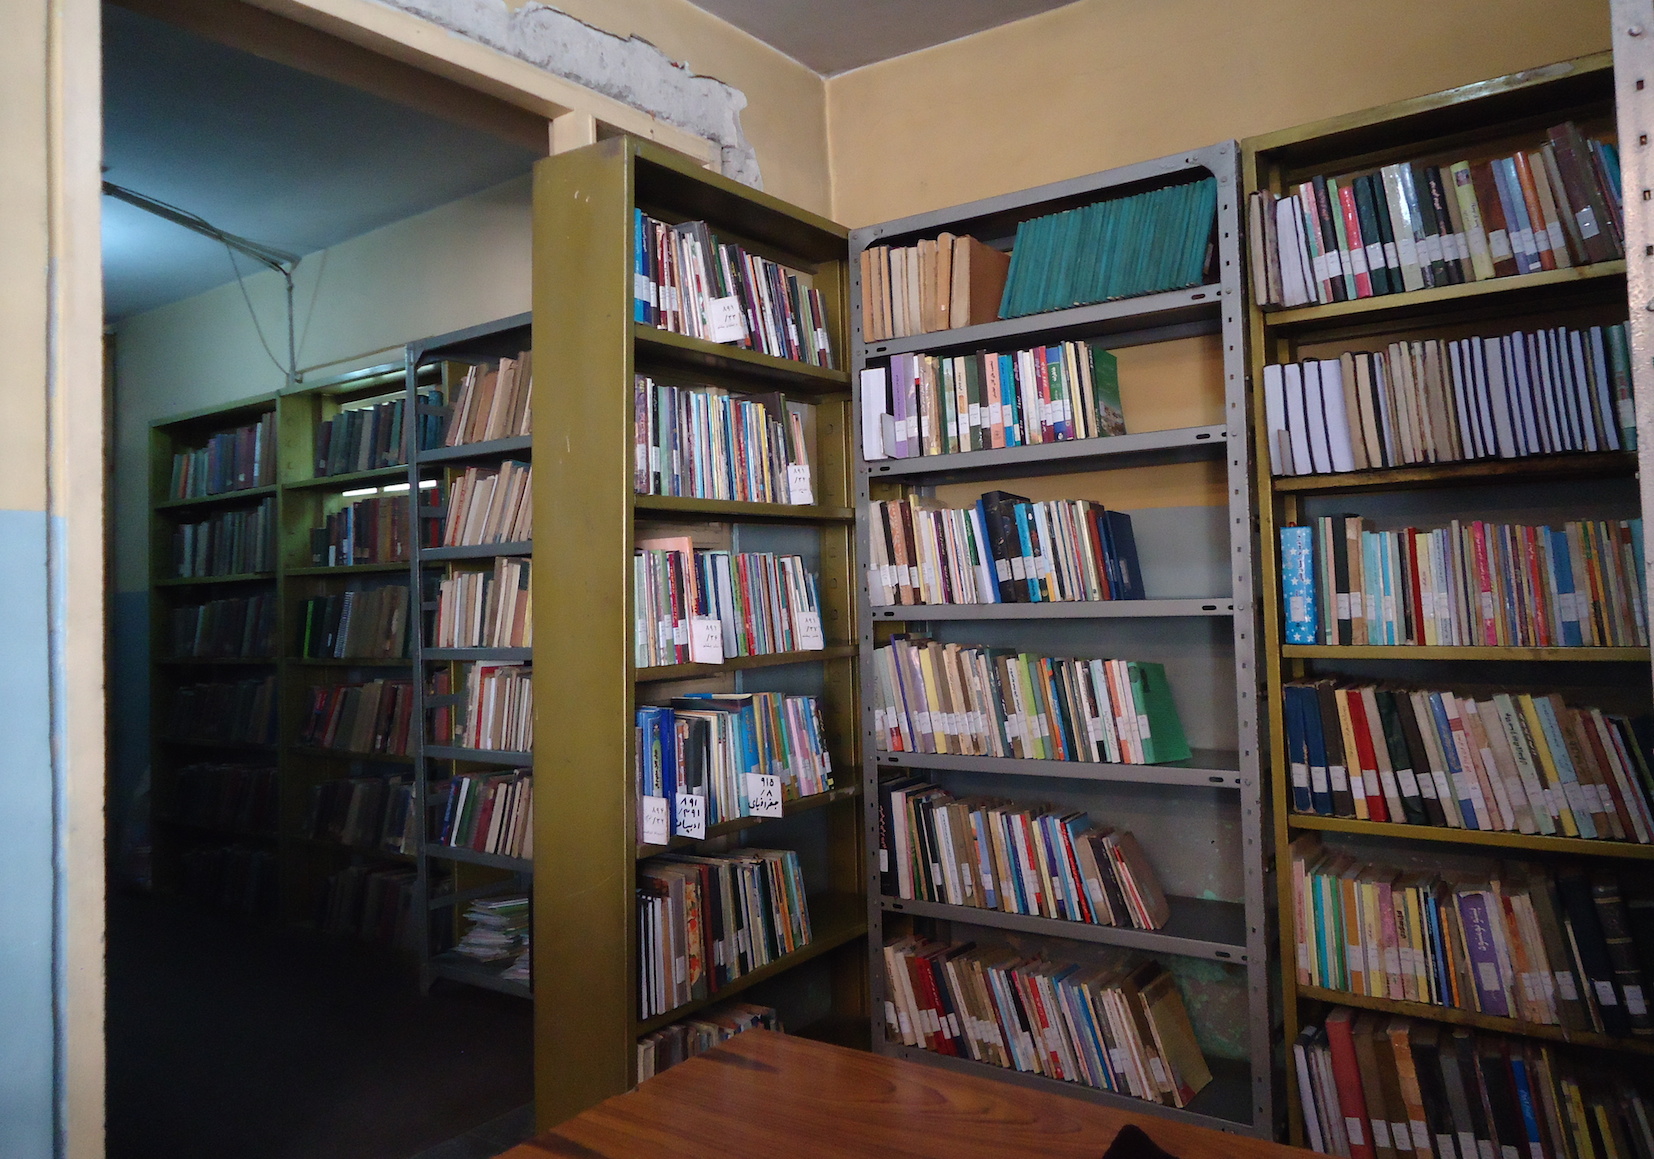 अफगानिस्तानमा पढ्ने बानीको विकास गर्दै पुस्तकालयहरु